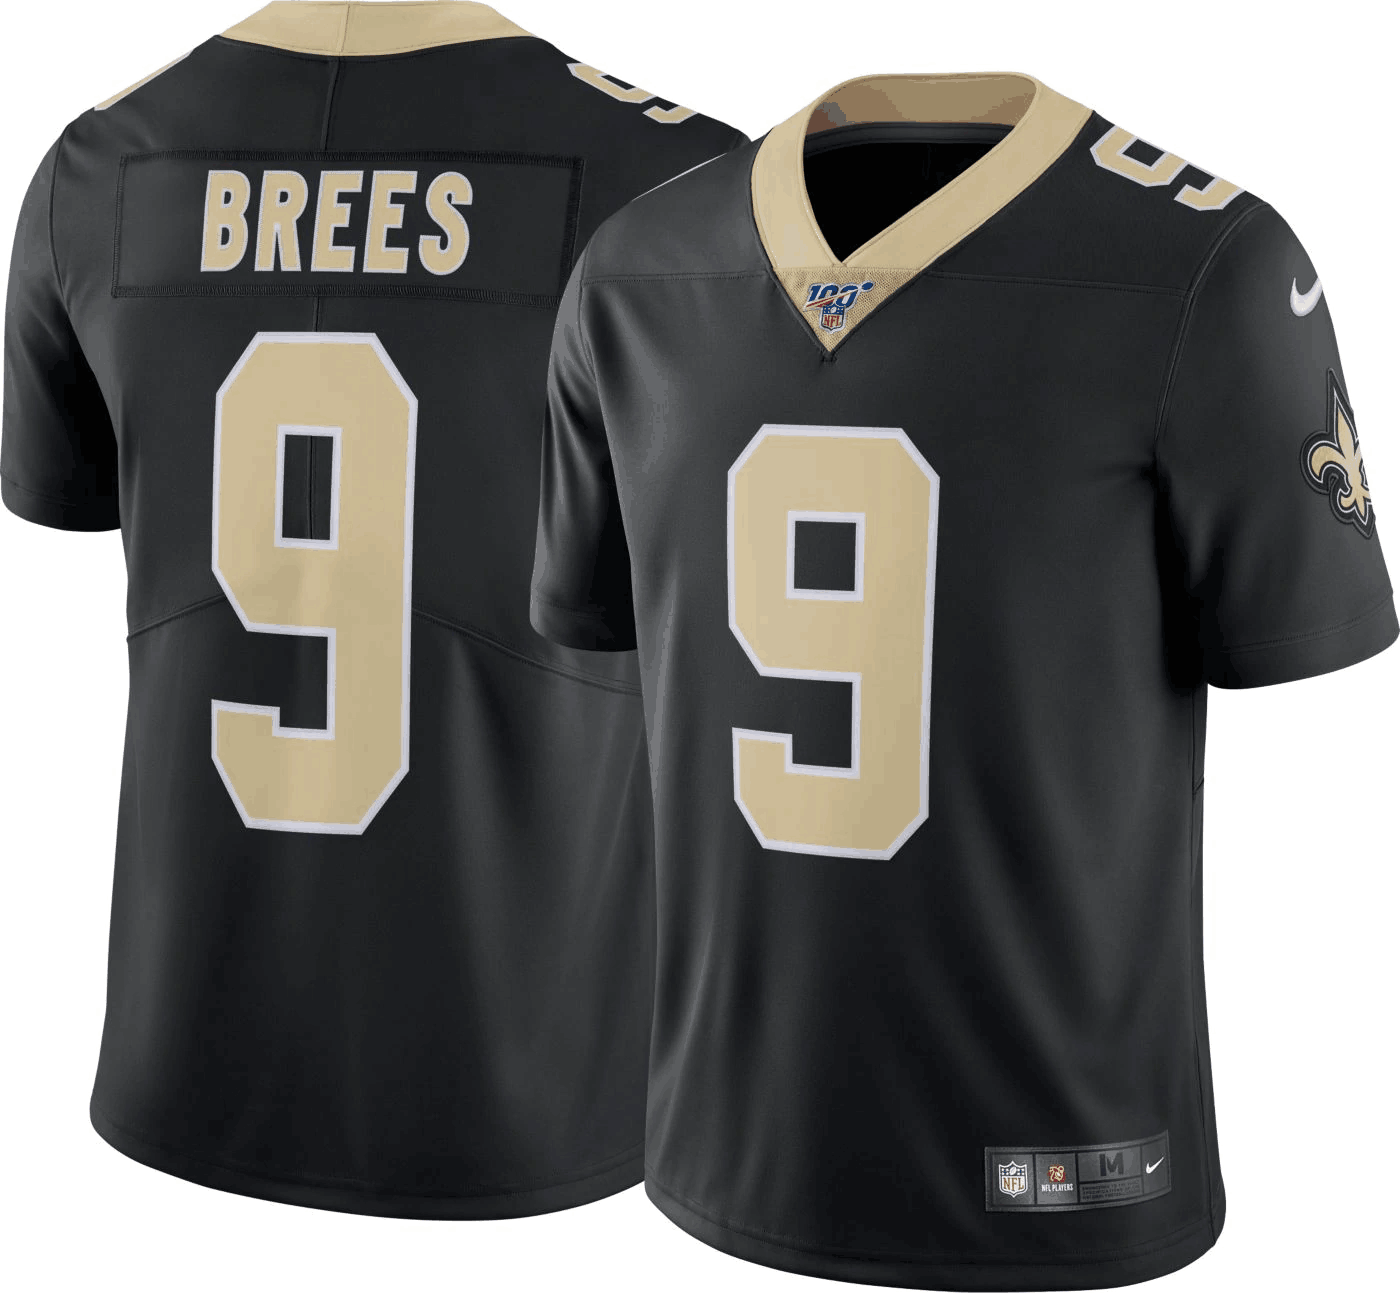 Men's New Orleans Saints #9 Drew Brees Black 2019 100th Season Vapor Untouchable Limited Stitched NFL Jersey